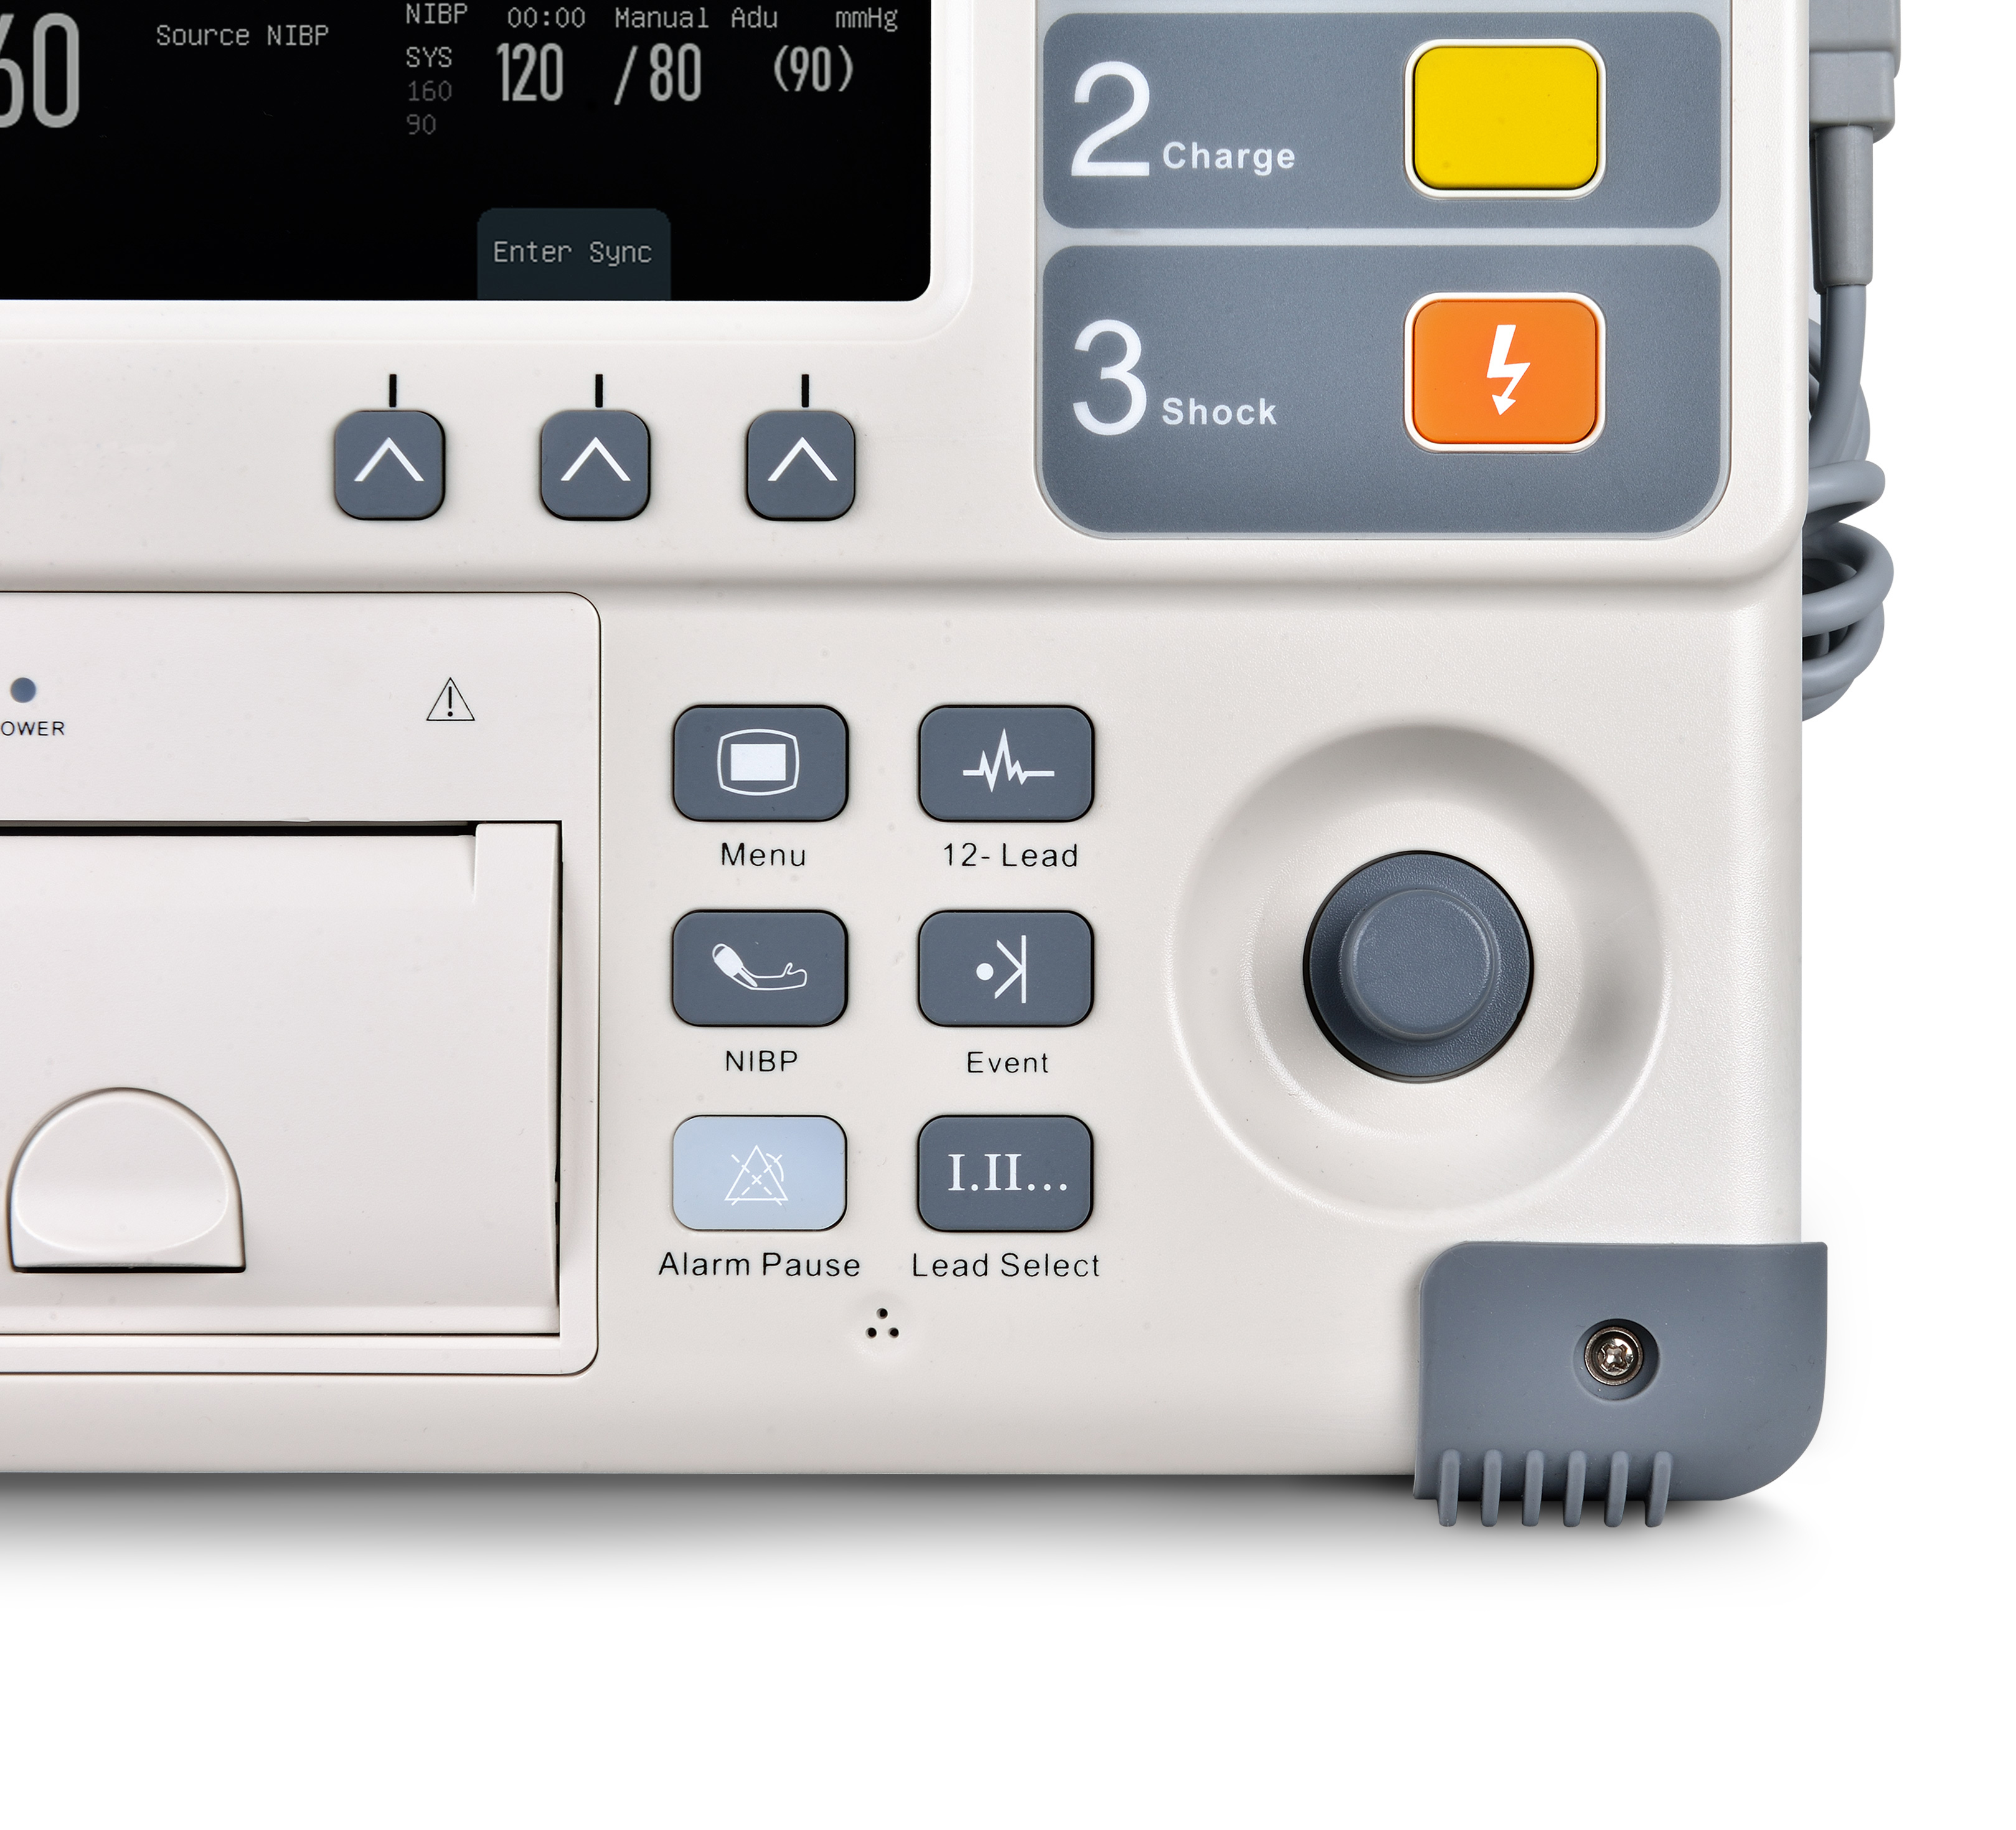 Krankenhaus AED professioneller biphassischer Defibrillator-Monitor